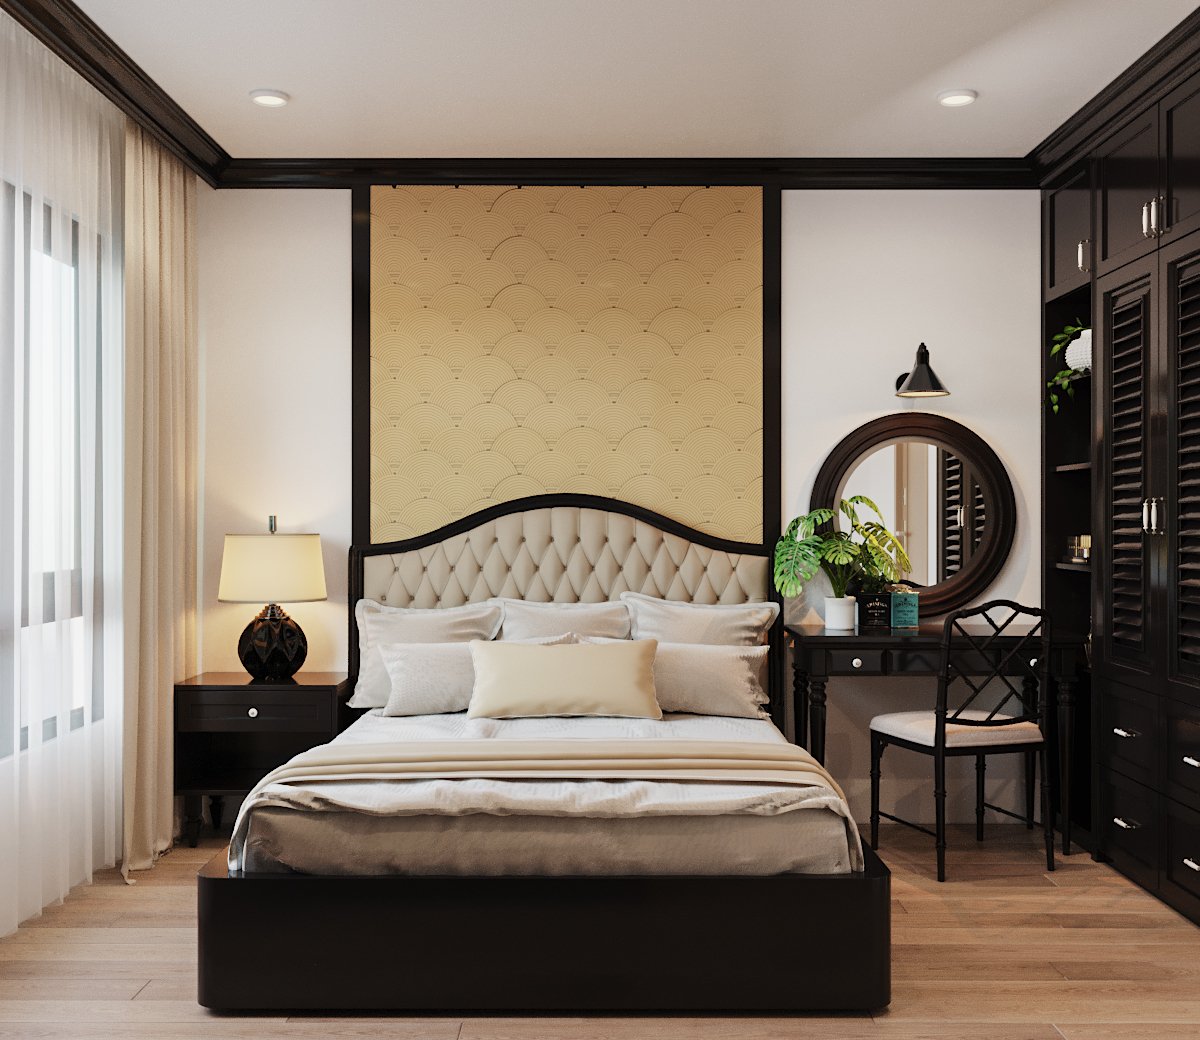 hình ảnh phòng ngủ với giường, tủ màu nâu đen, gương tròn, sàn gỗ